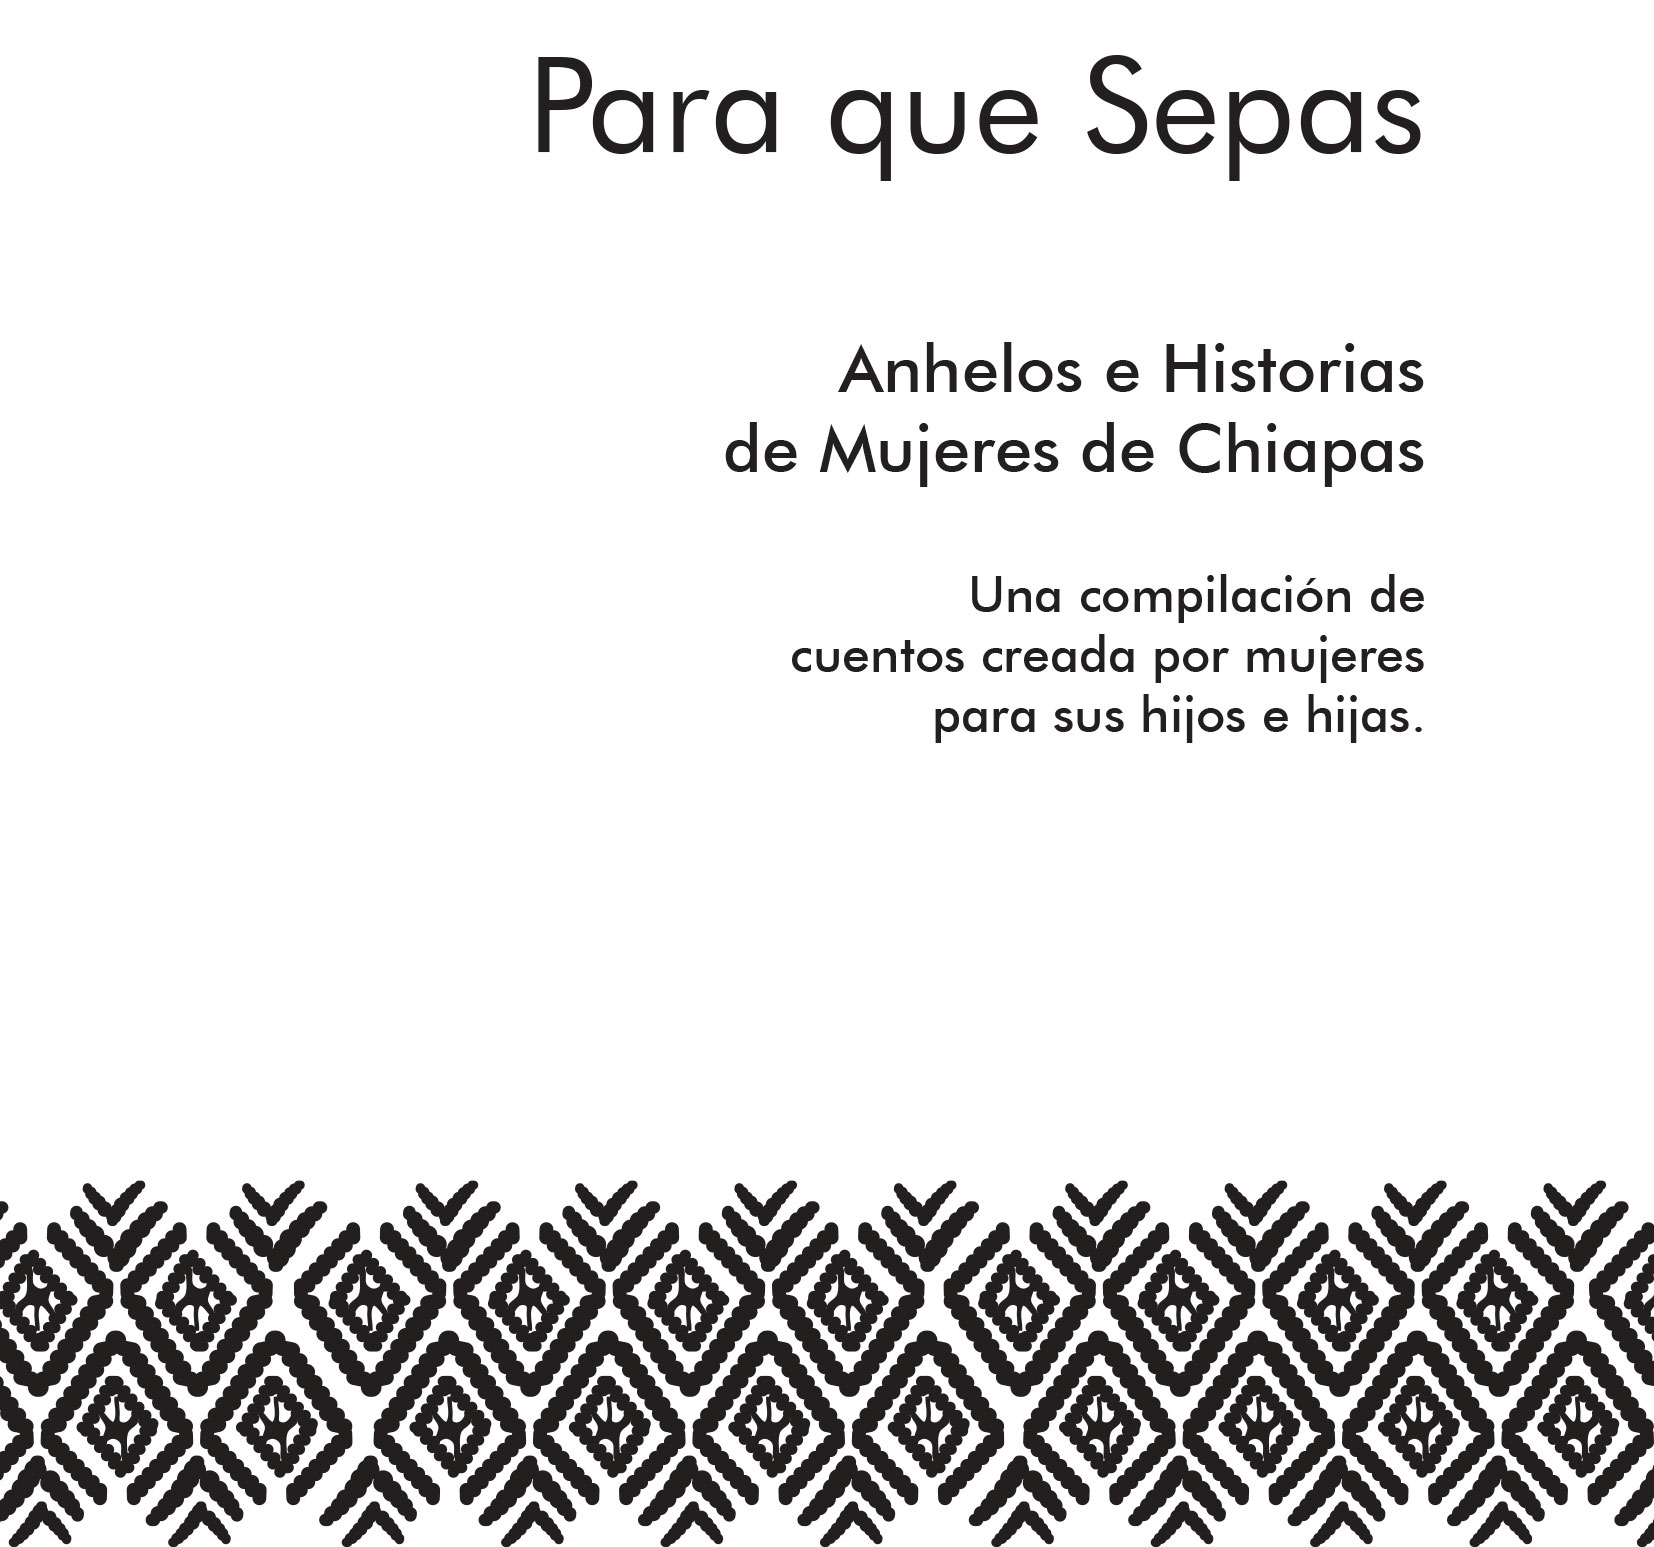 Para que Sepas. Anhelos e Historias de Mujeres de Chiapas